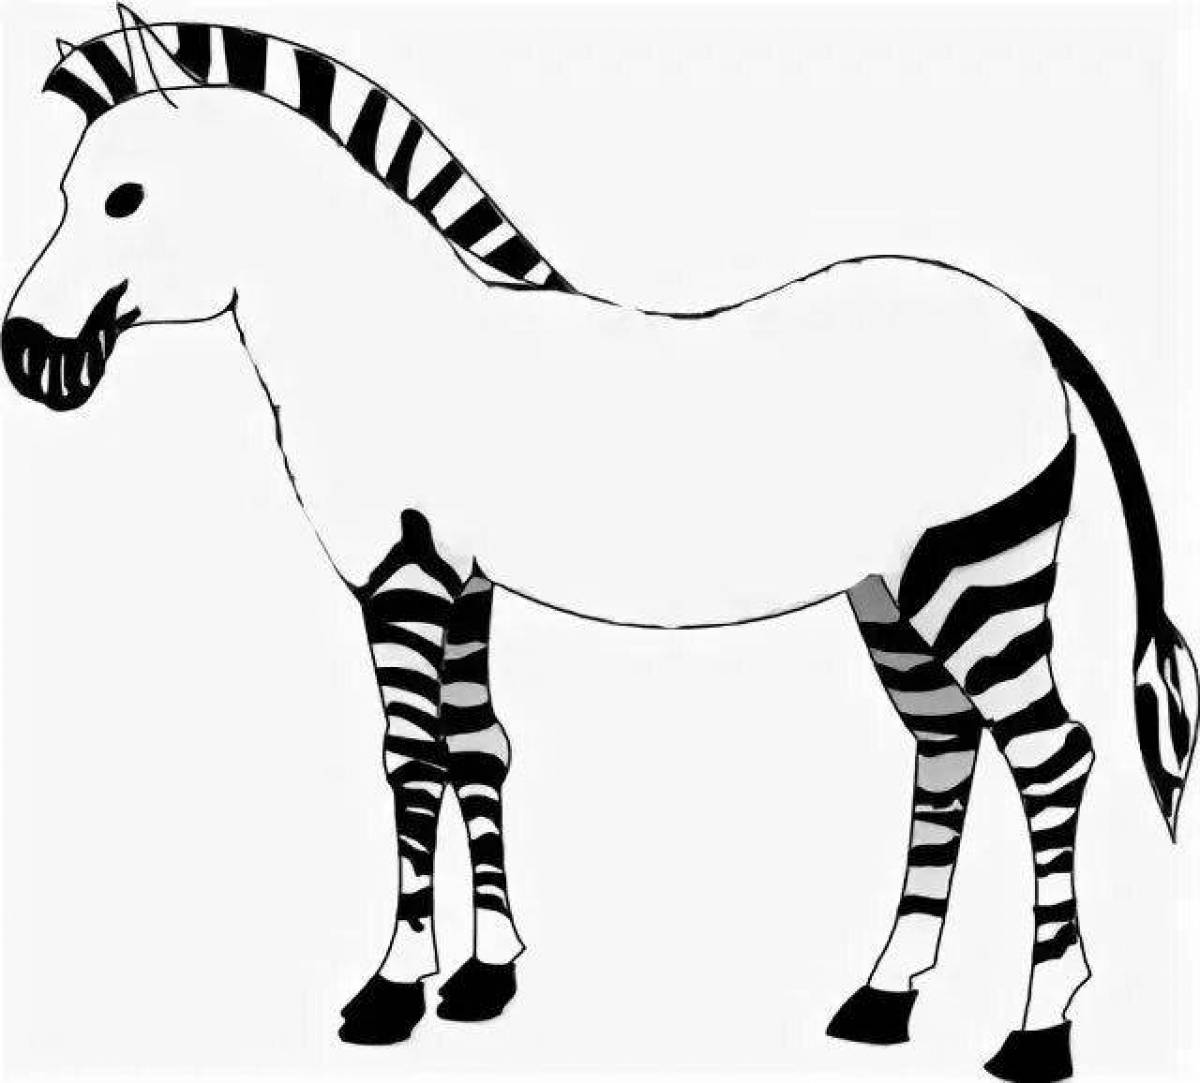 Sweet zebra without stripes